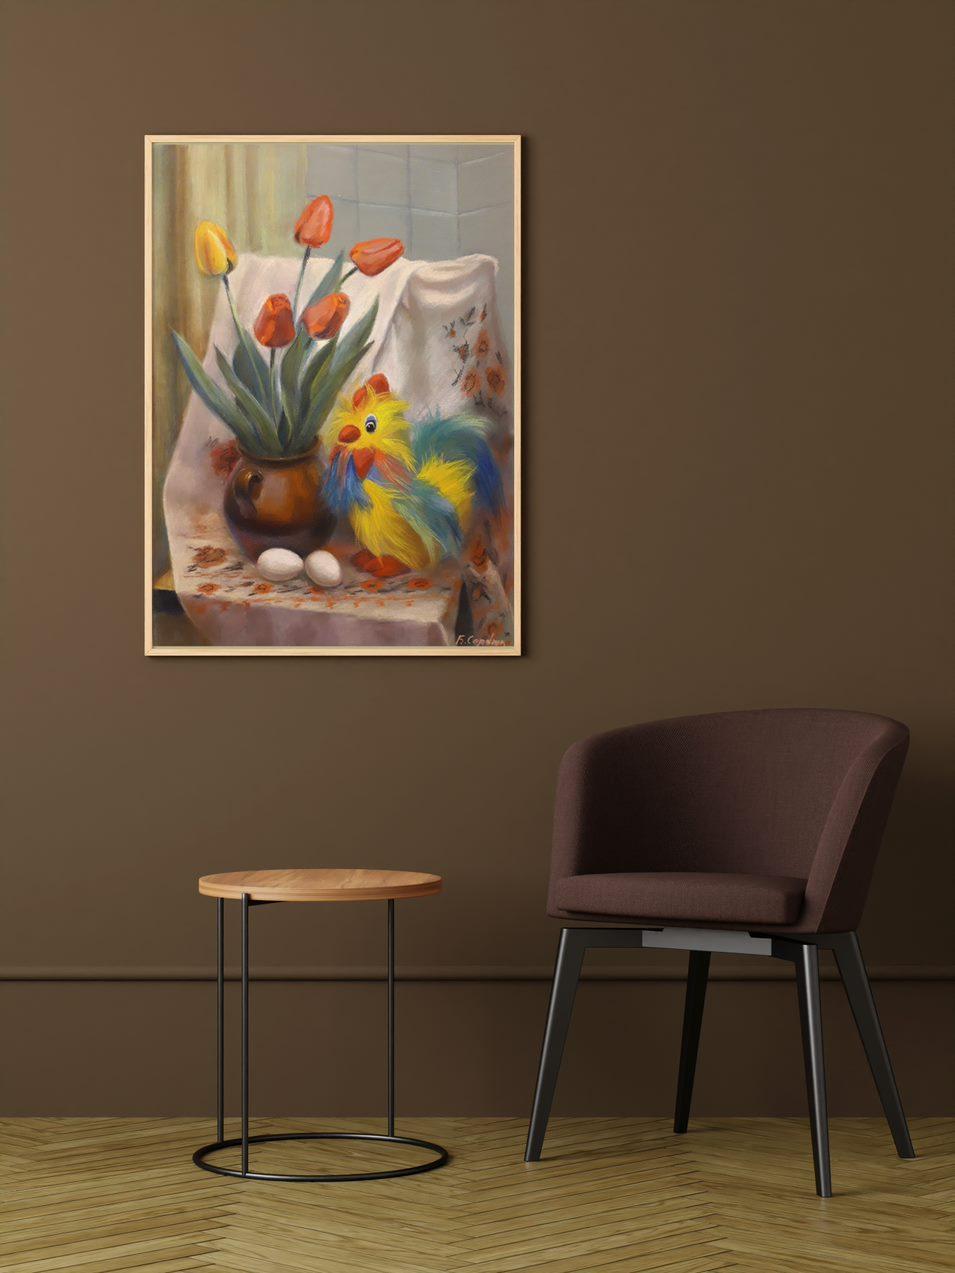 Artistics : Boris Serdyuk 
Travail : Peinture originale, œuvre d'art faite à la main, unique en son genre 
Médium : Pastel sur papier
Style : Impressionnisme
Année : 2020
Titre : Nature morte au coq et aux tulipes 
Taille : 27.5